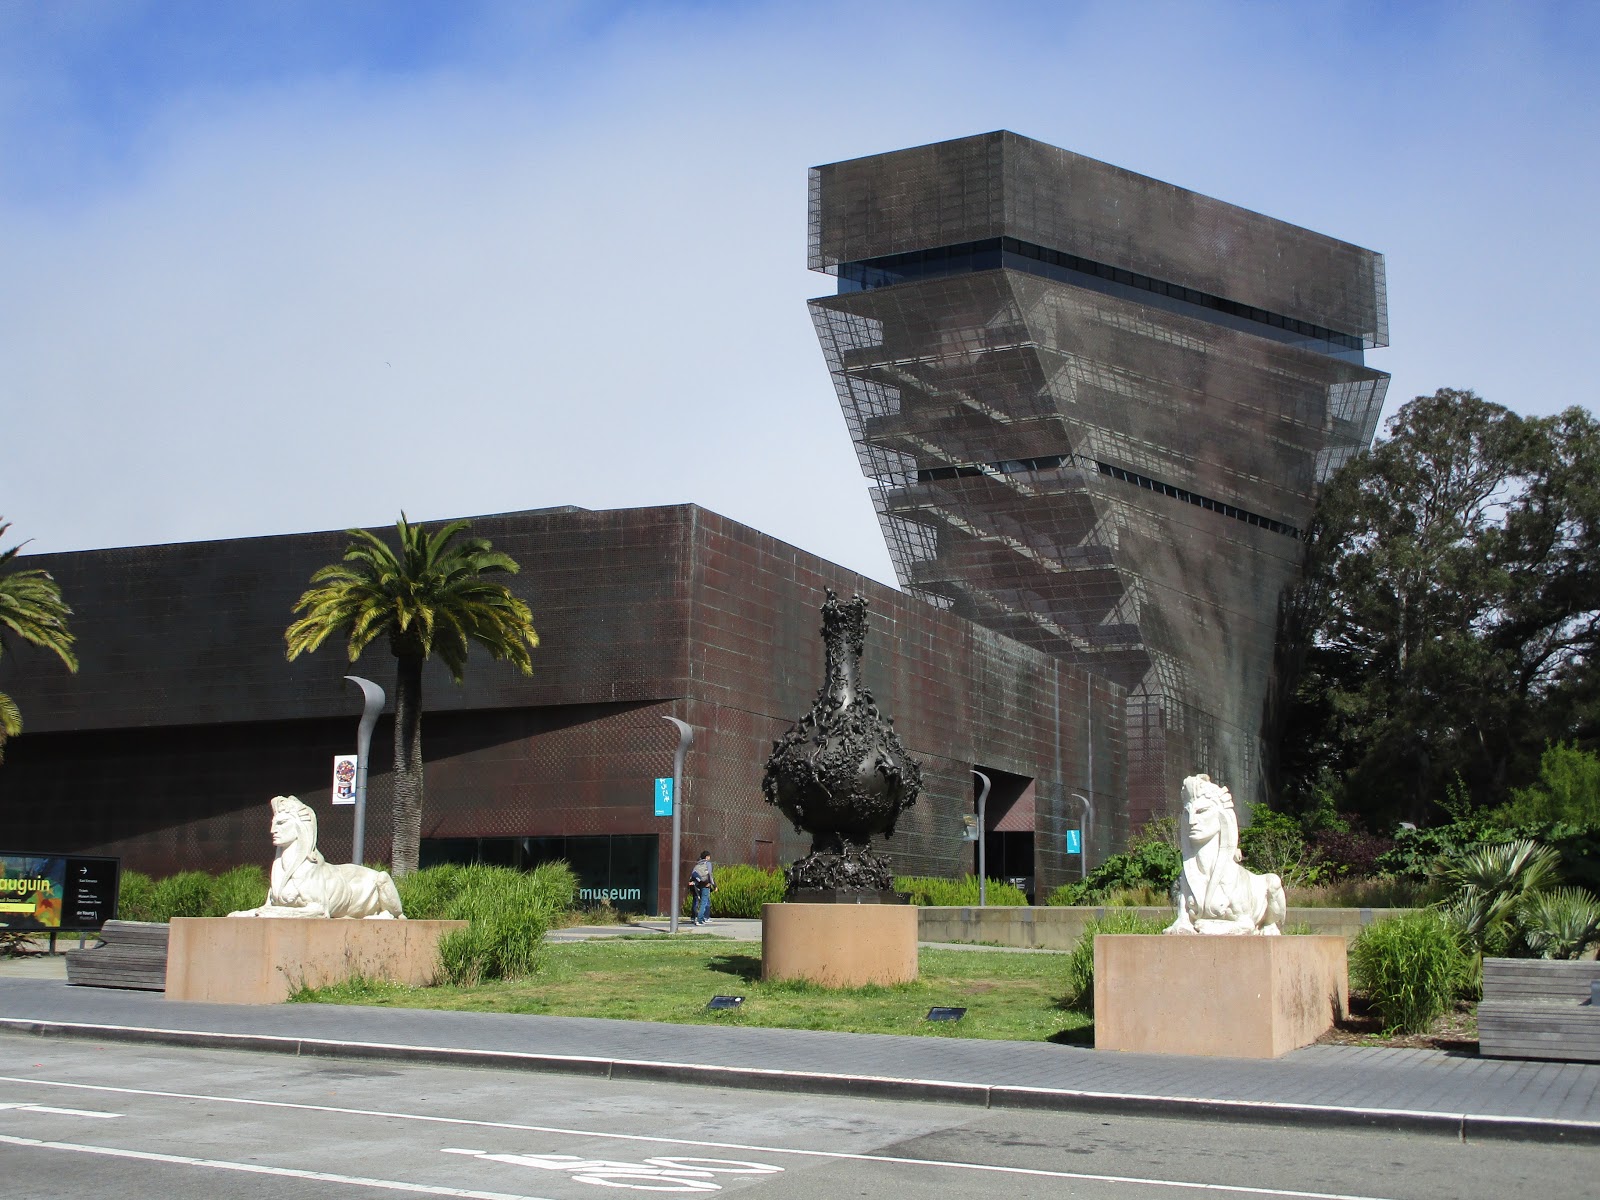 100 километров по Сан-Франциско museum,dvorak,travel,sf,music,sfo